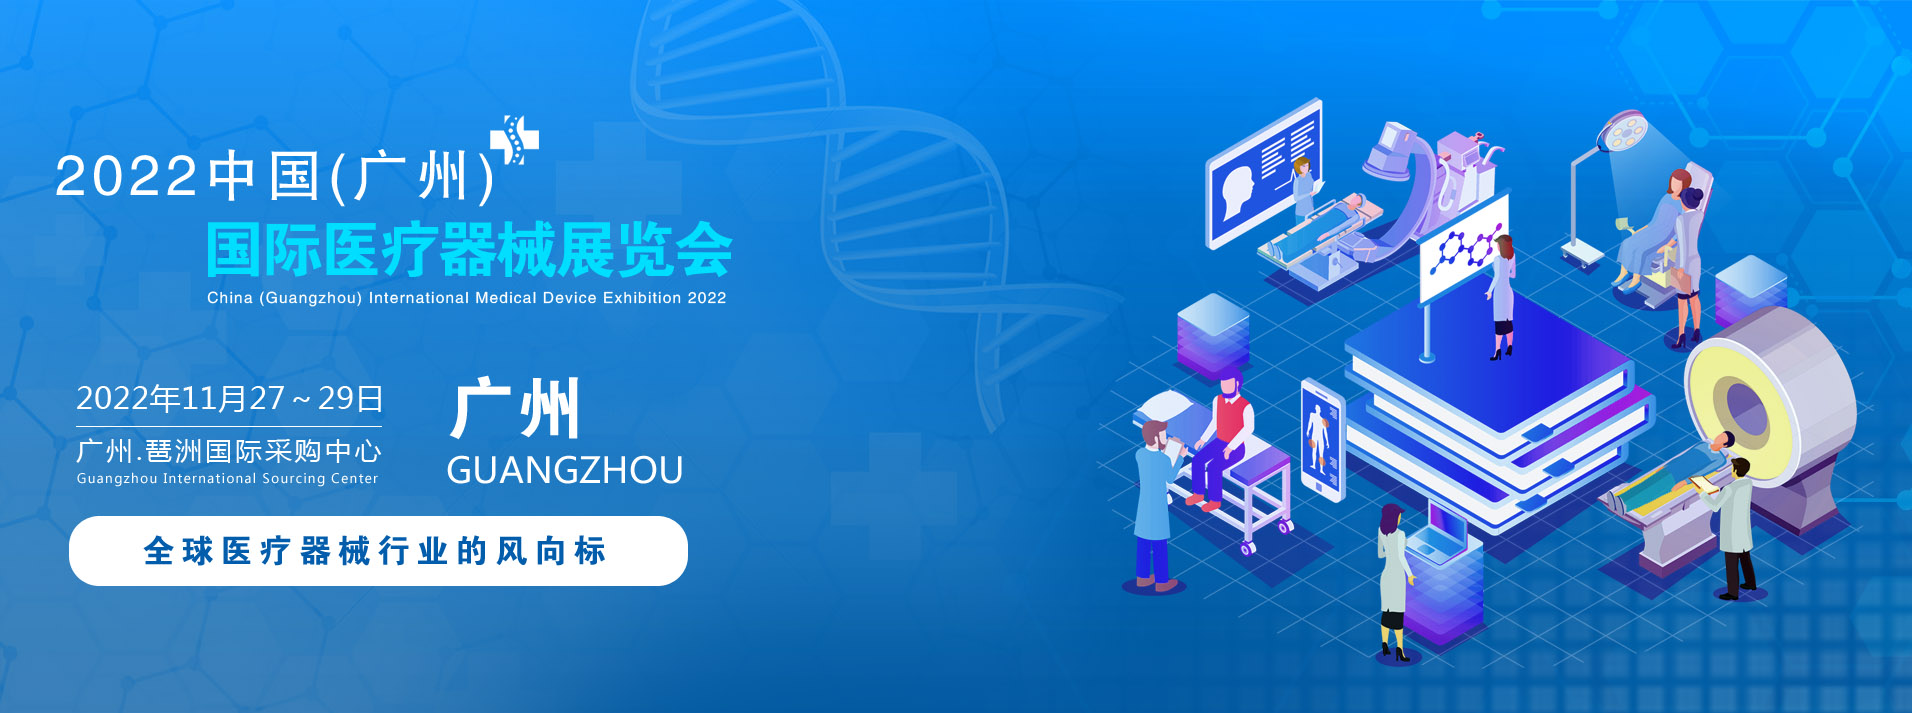 2022中国(广州)大湾区国际医疗器械展览会|医疗模型展览会